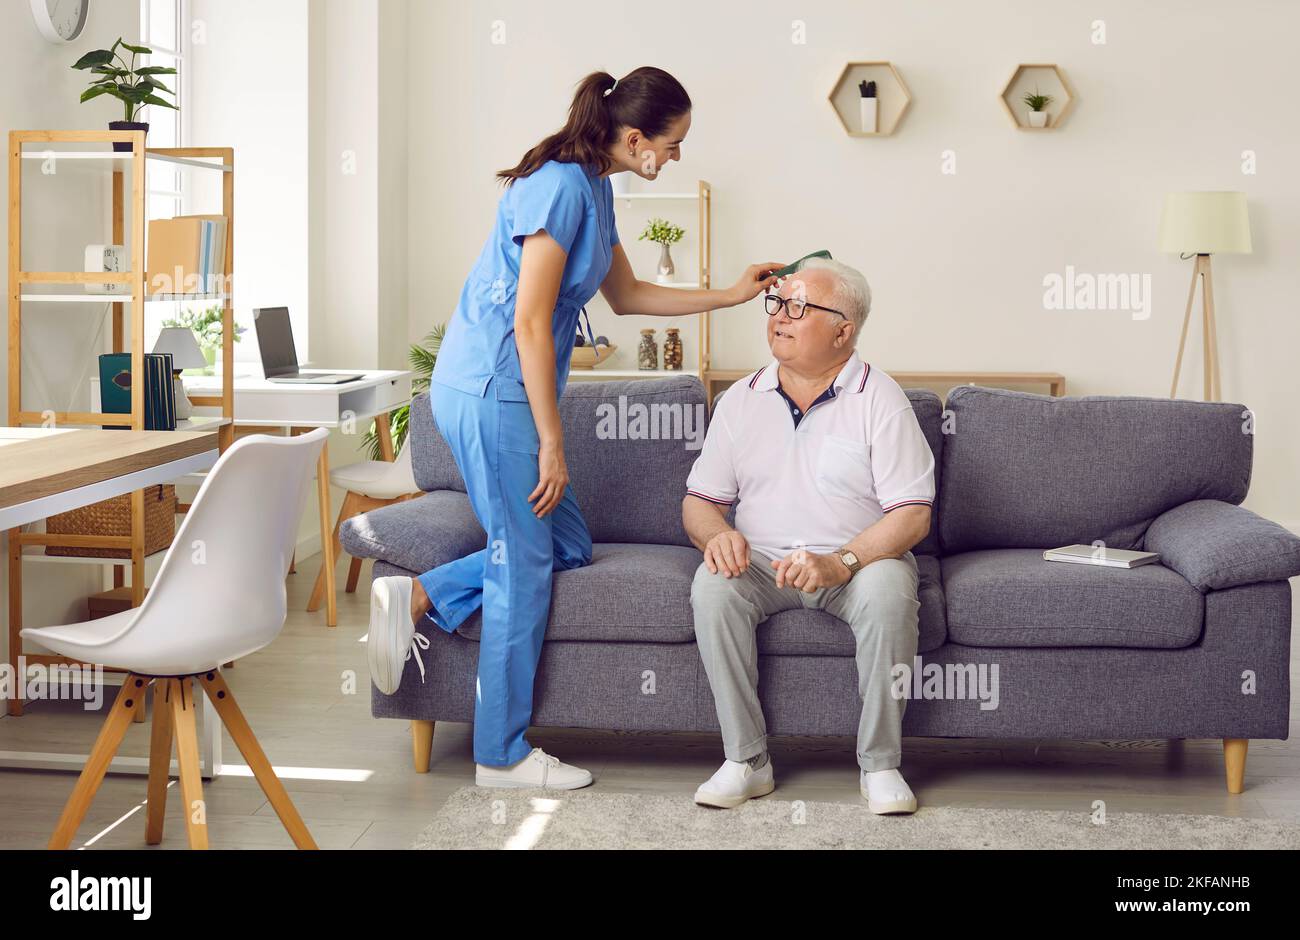 Freundliche junge Krankenschwester kämmt die Haare eines älteren Mannes, der im Pflegeheim auf dem Sofa sitzt. Stockfoto